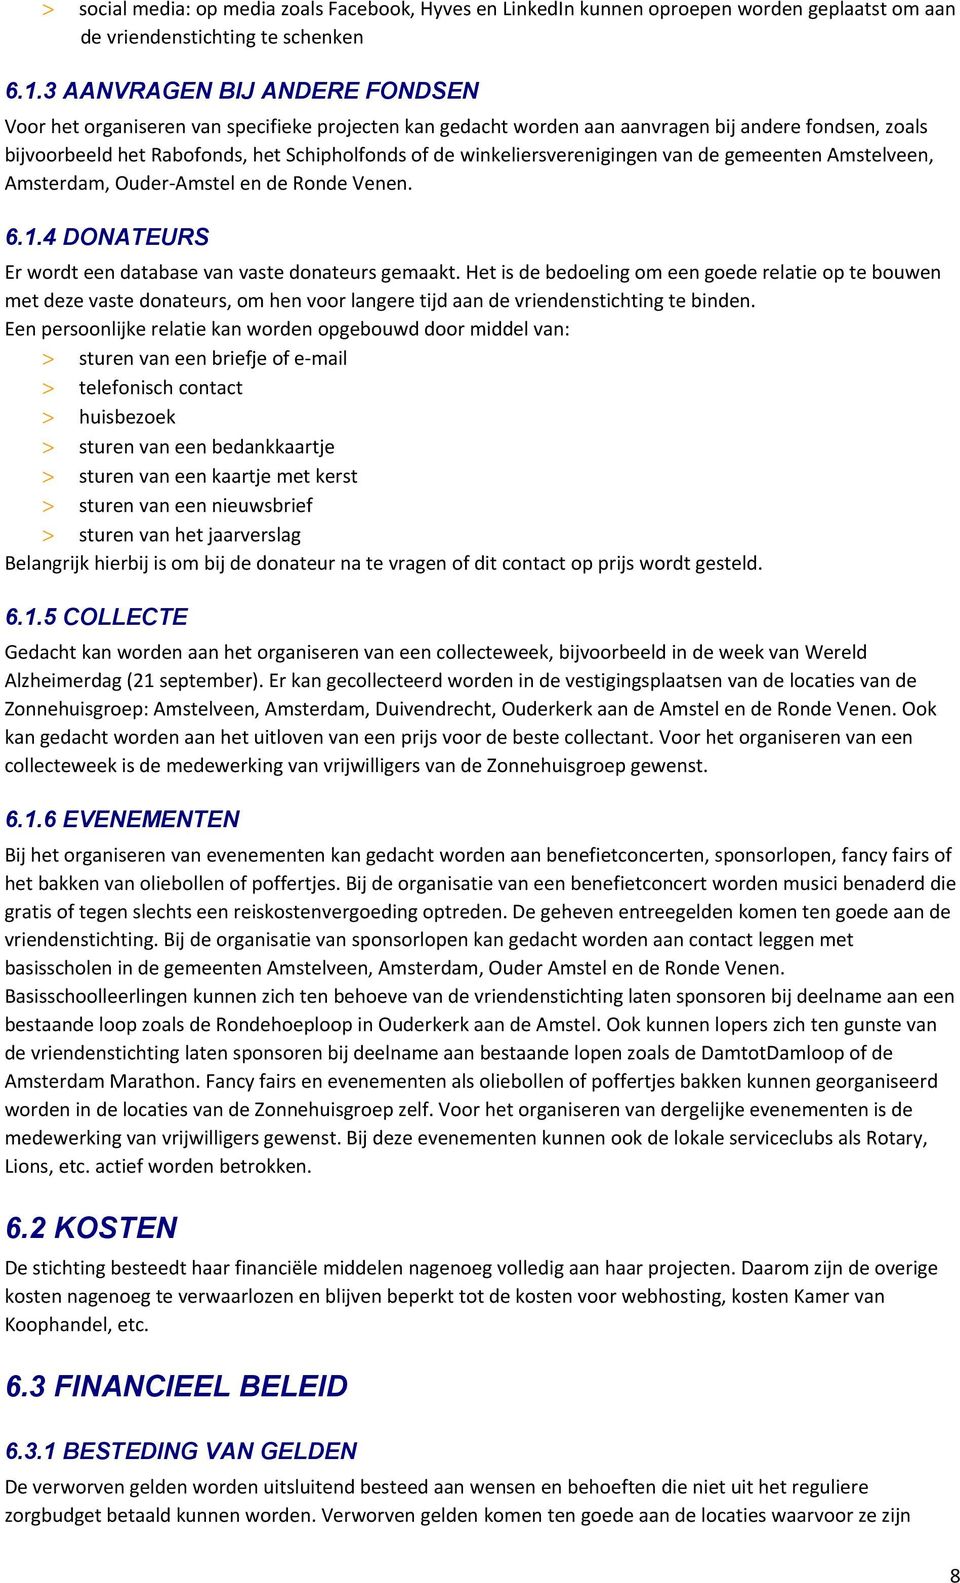 winkeliersverenigingen van de gemeenten Amstelveen, Amsterdam, Ouder-Amstel en de Ronde Venen. 6.1.4 DONATEURS Er wordt een database van vaste donateurs gemaakt.